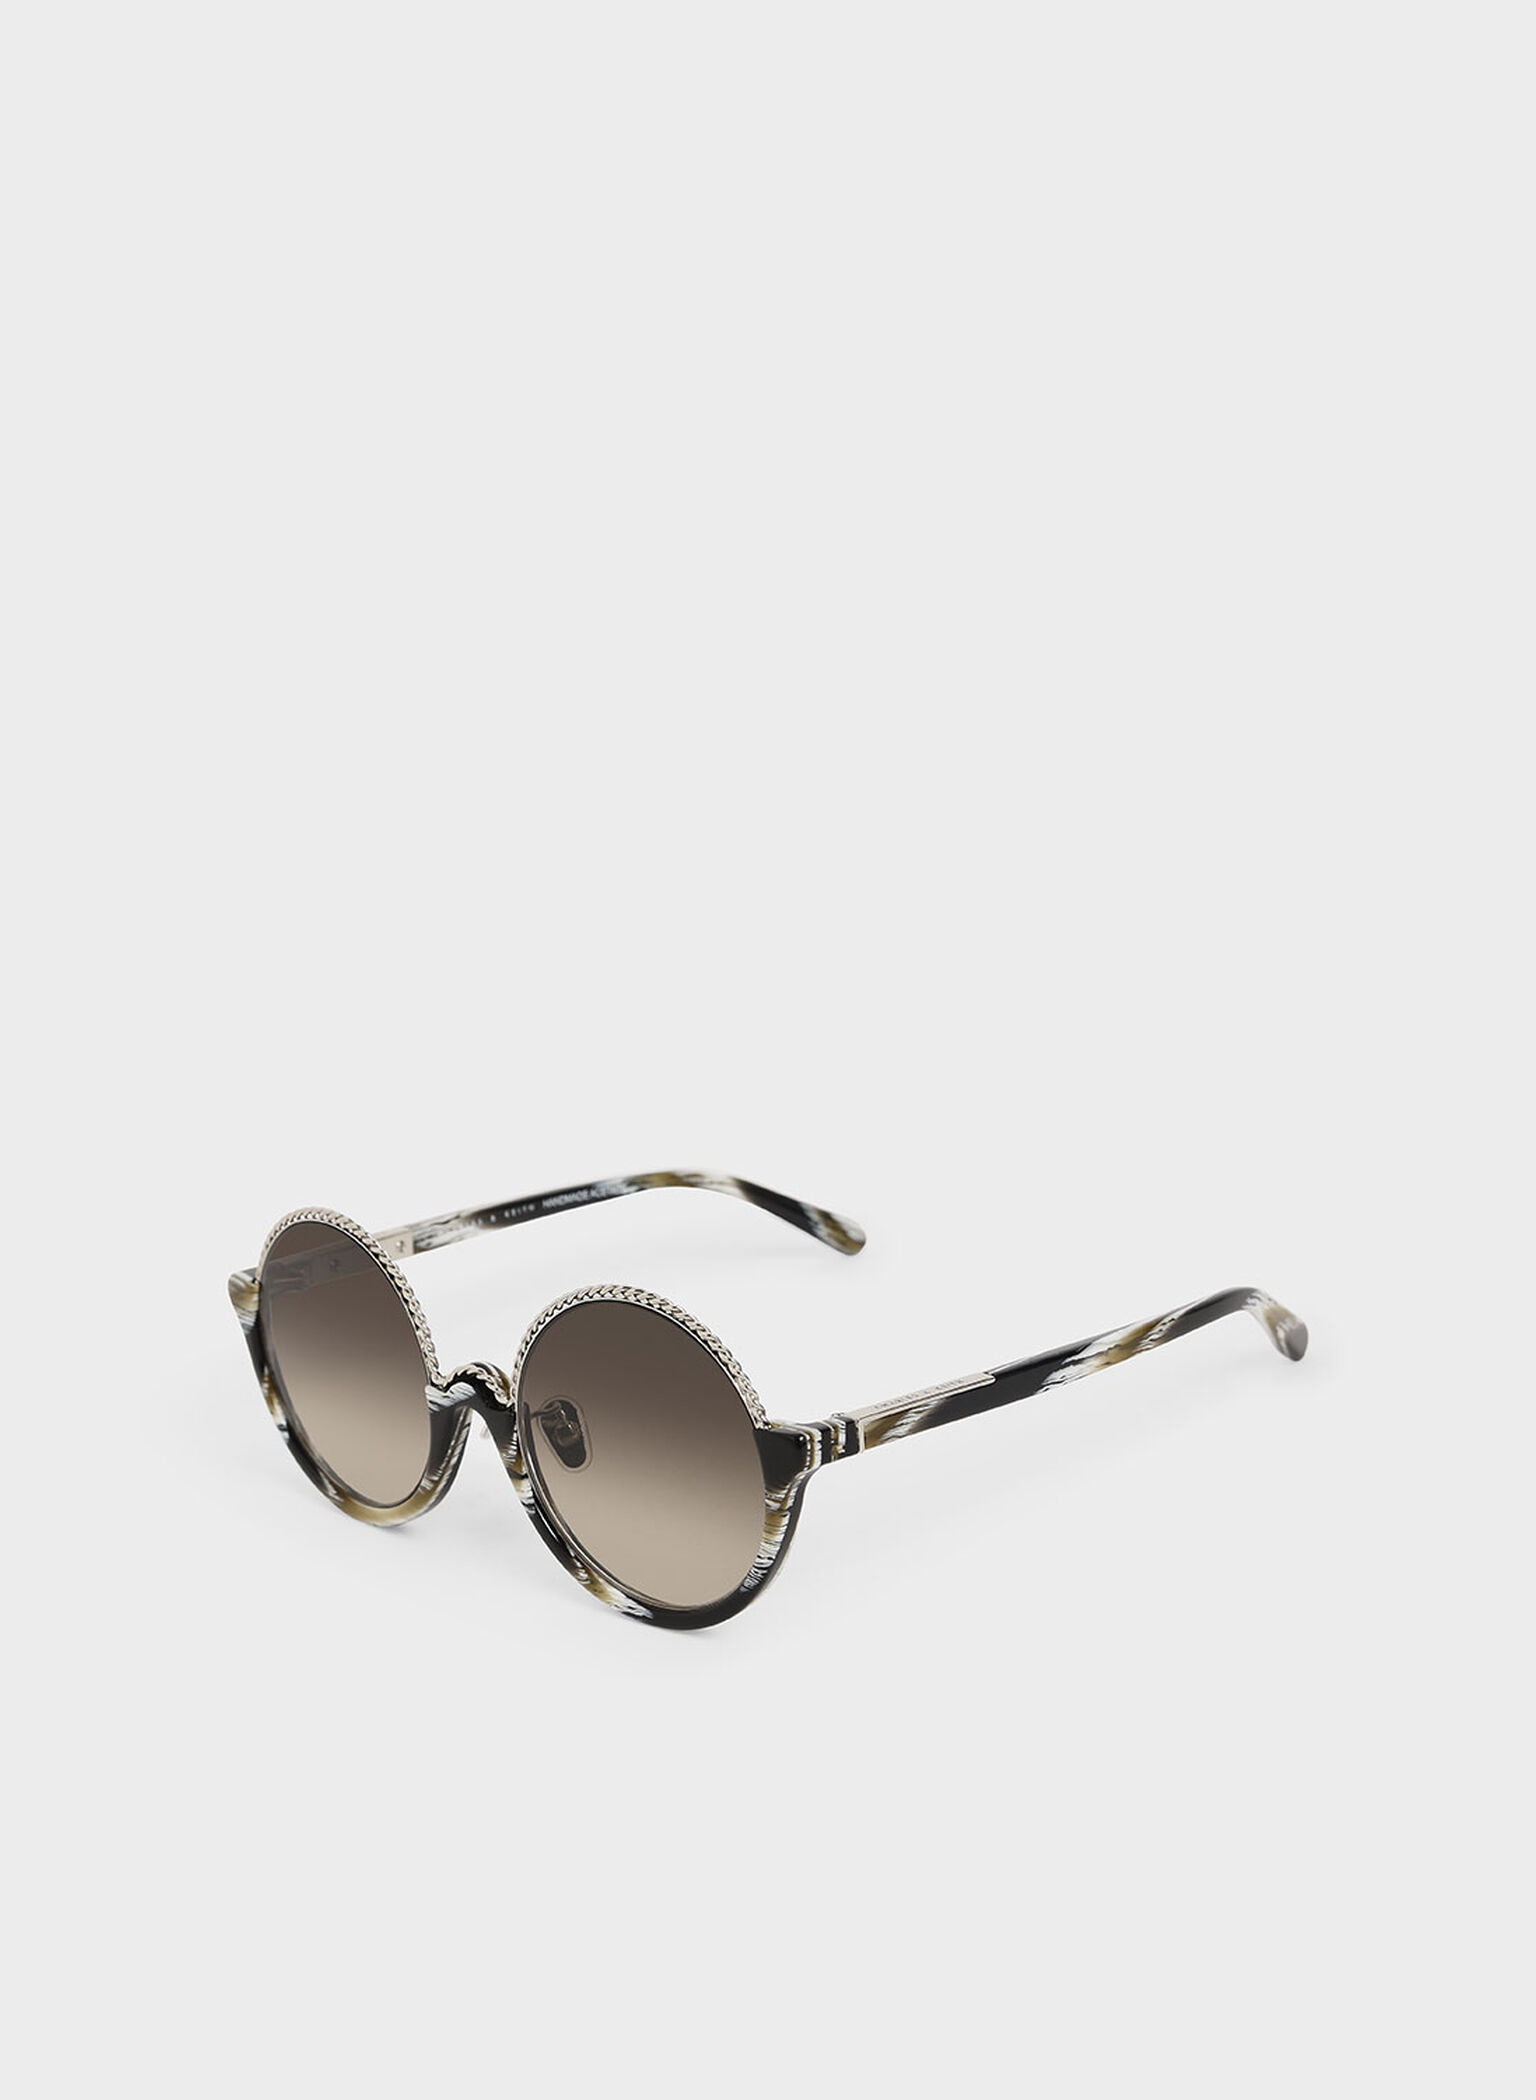 Printed Half Frame Embellished Round Sunglasses, Multi, hi-res